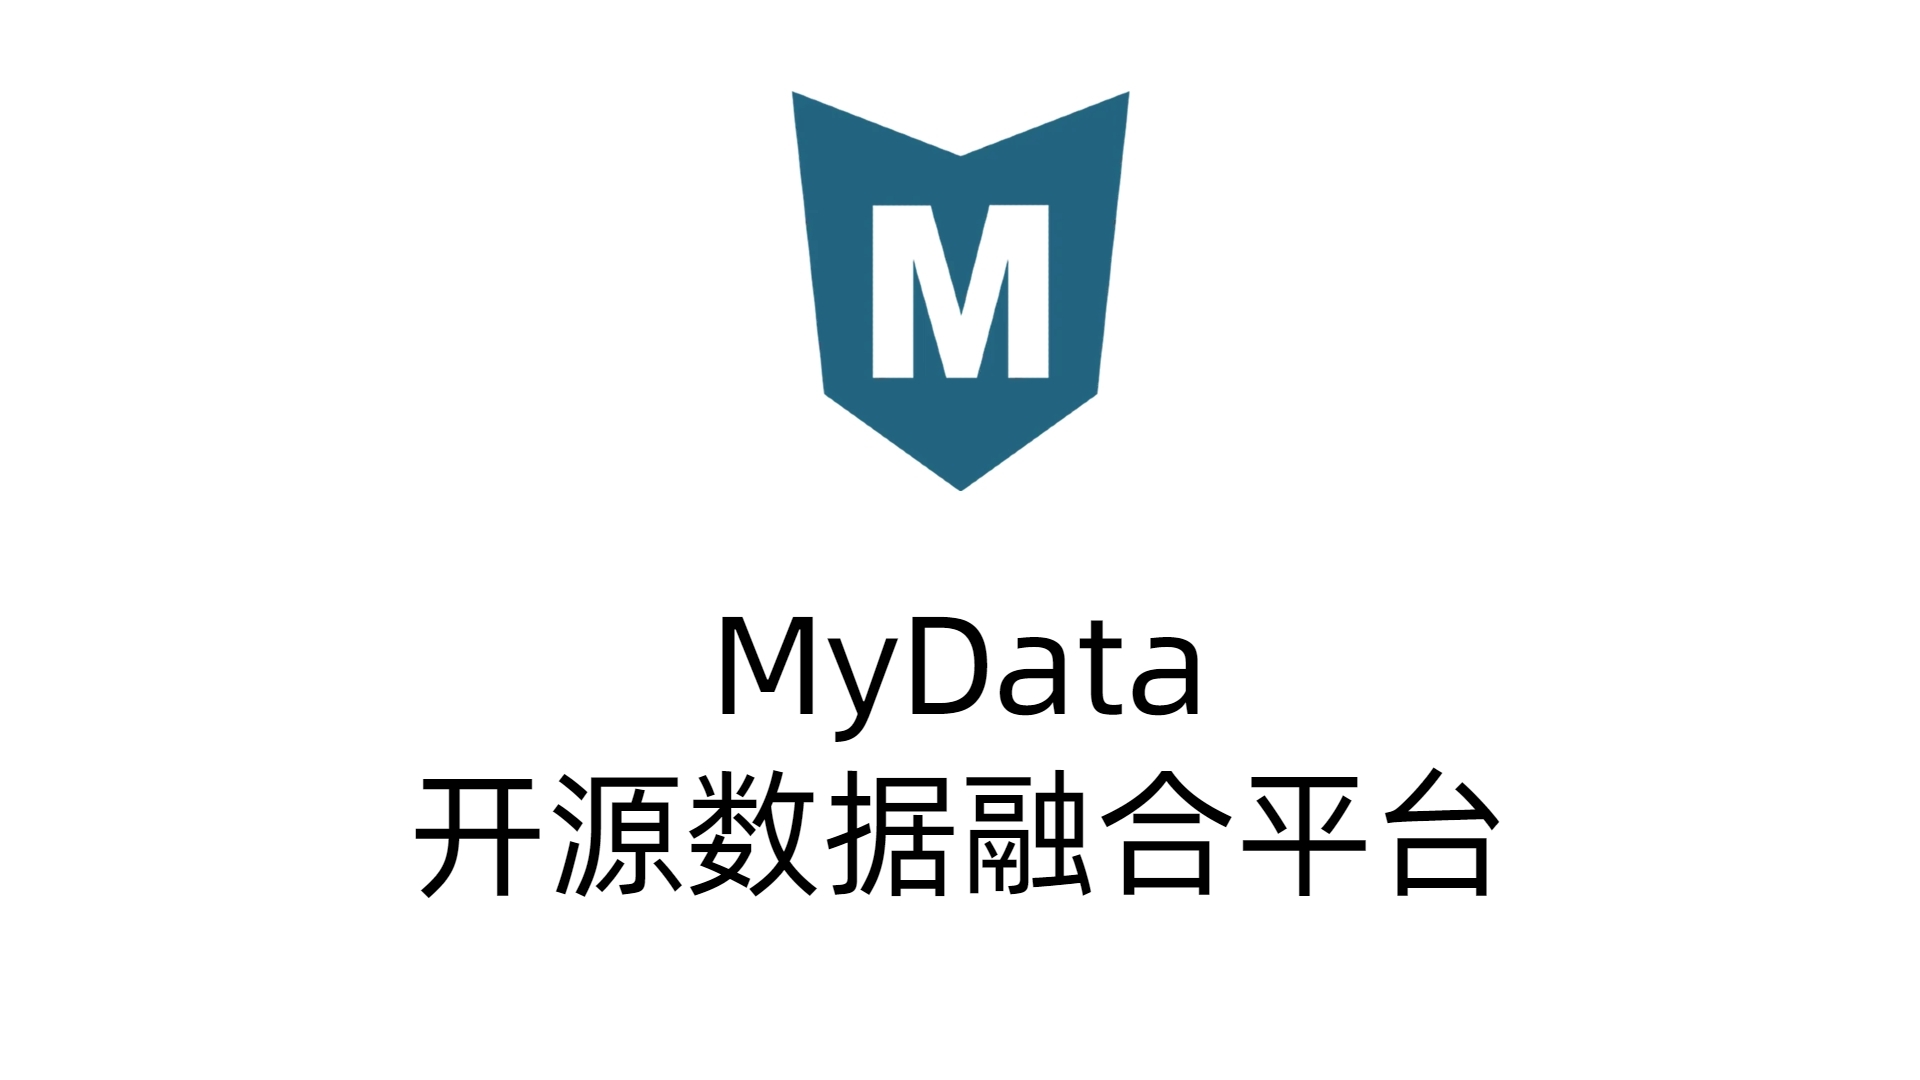 [自研开源] MyData v0.7.2 更新日志